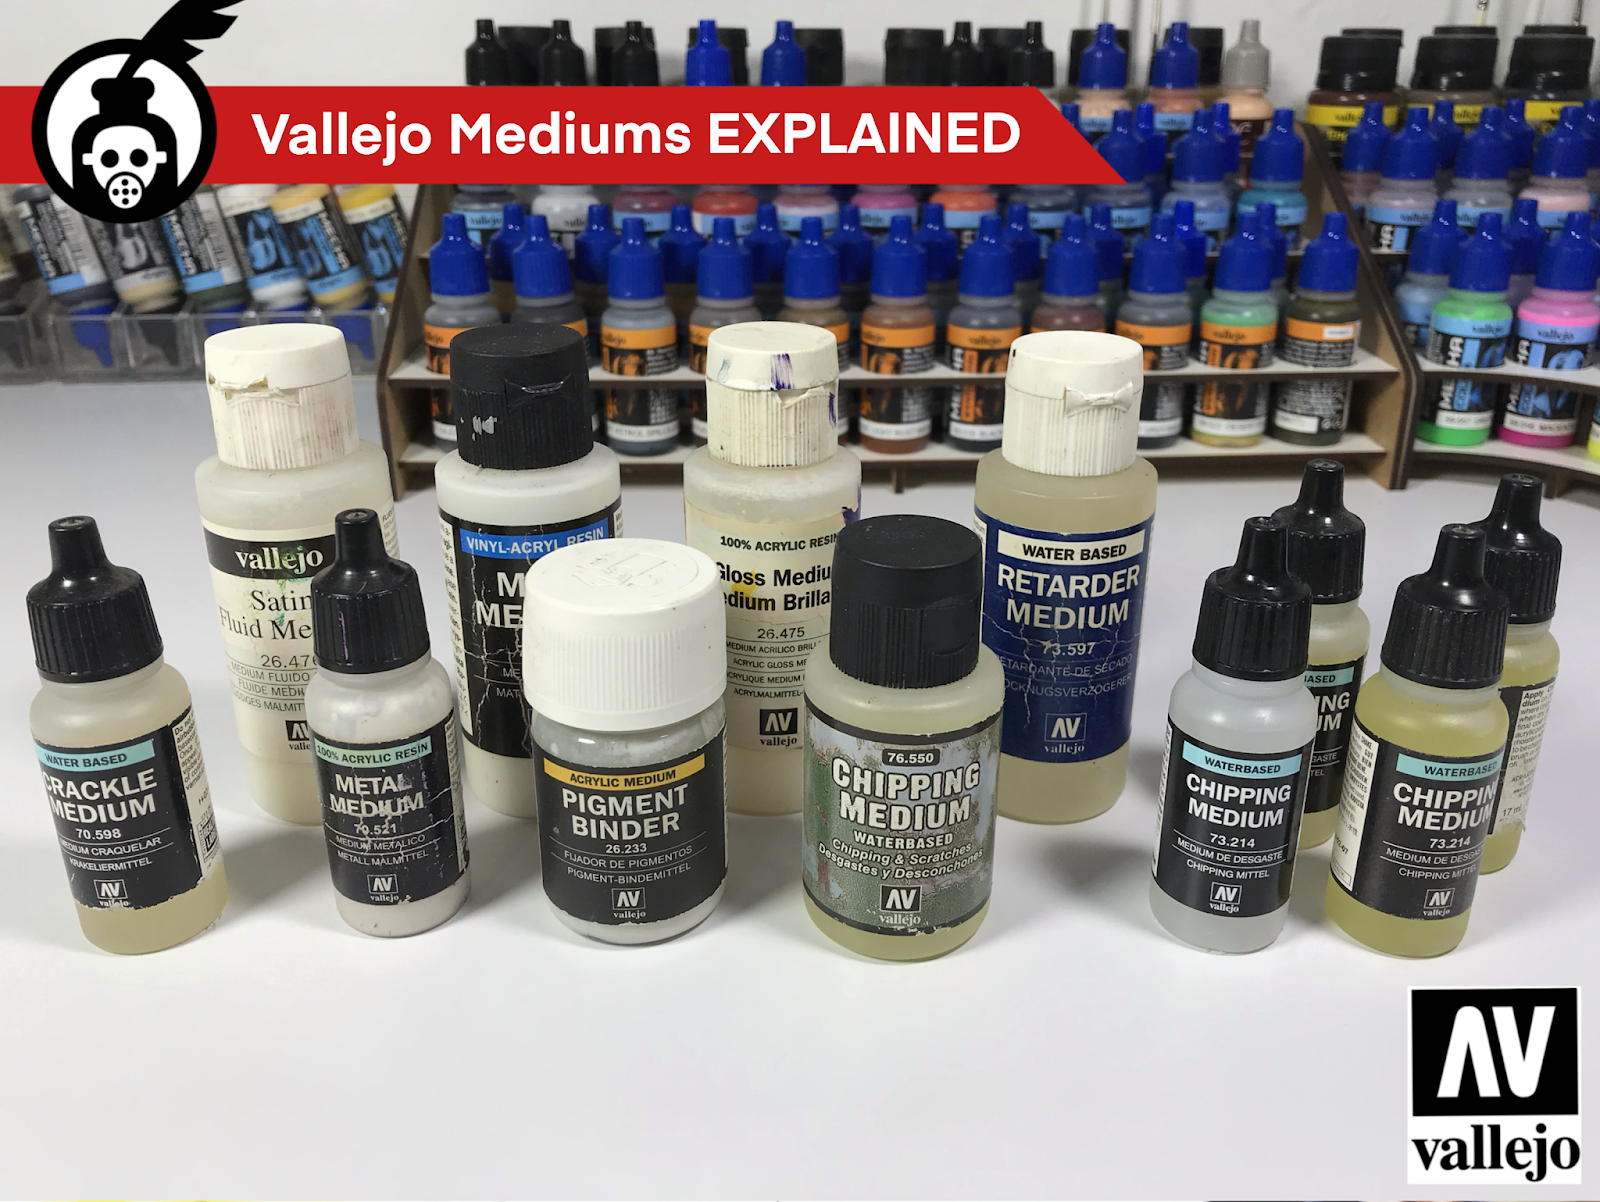 Acrylicos Vallejo - The New Vallejo Metal Color range! A long